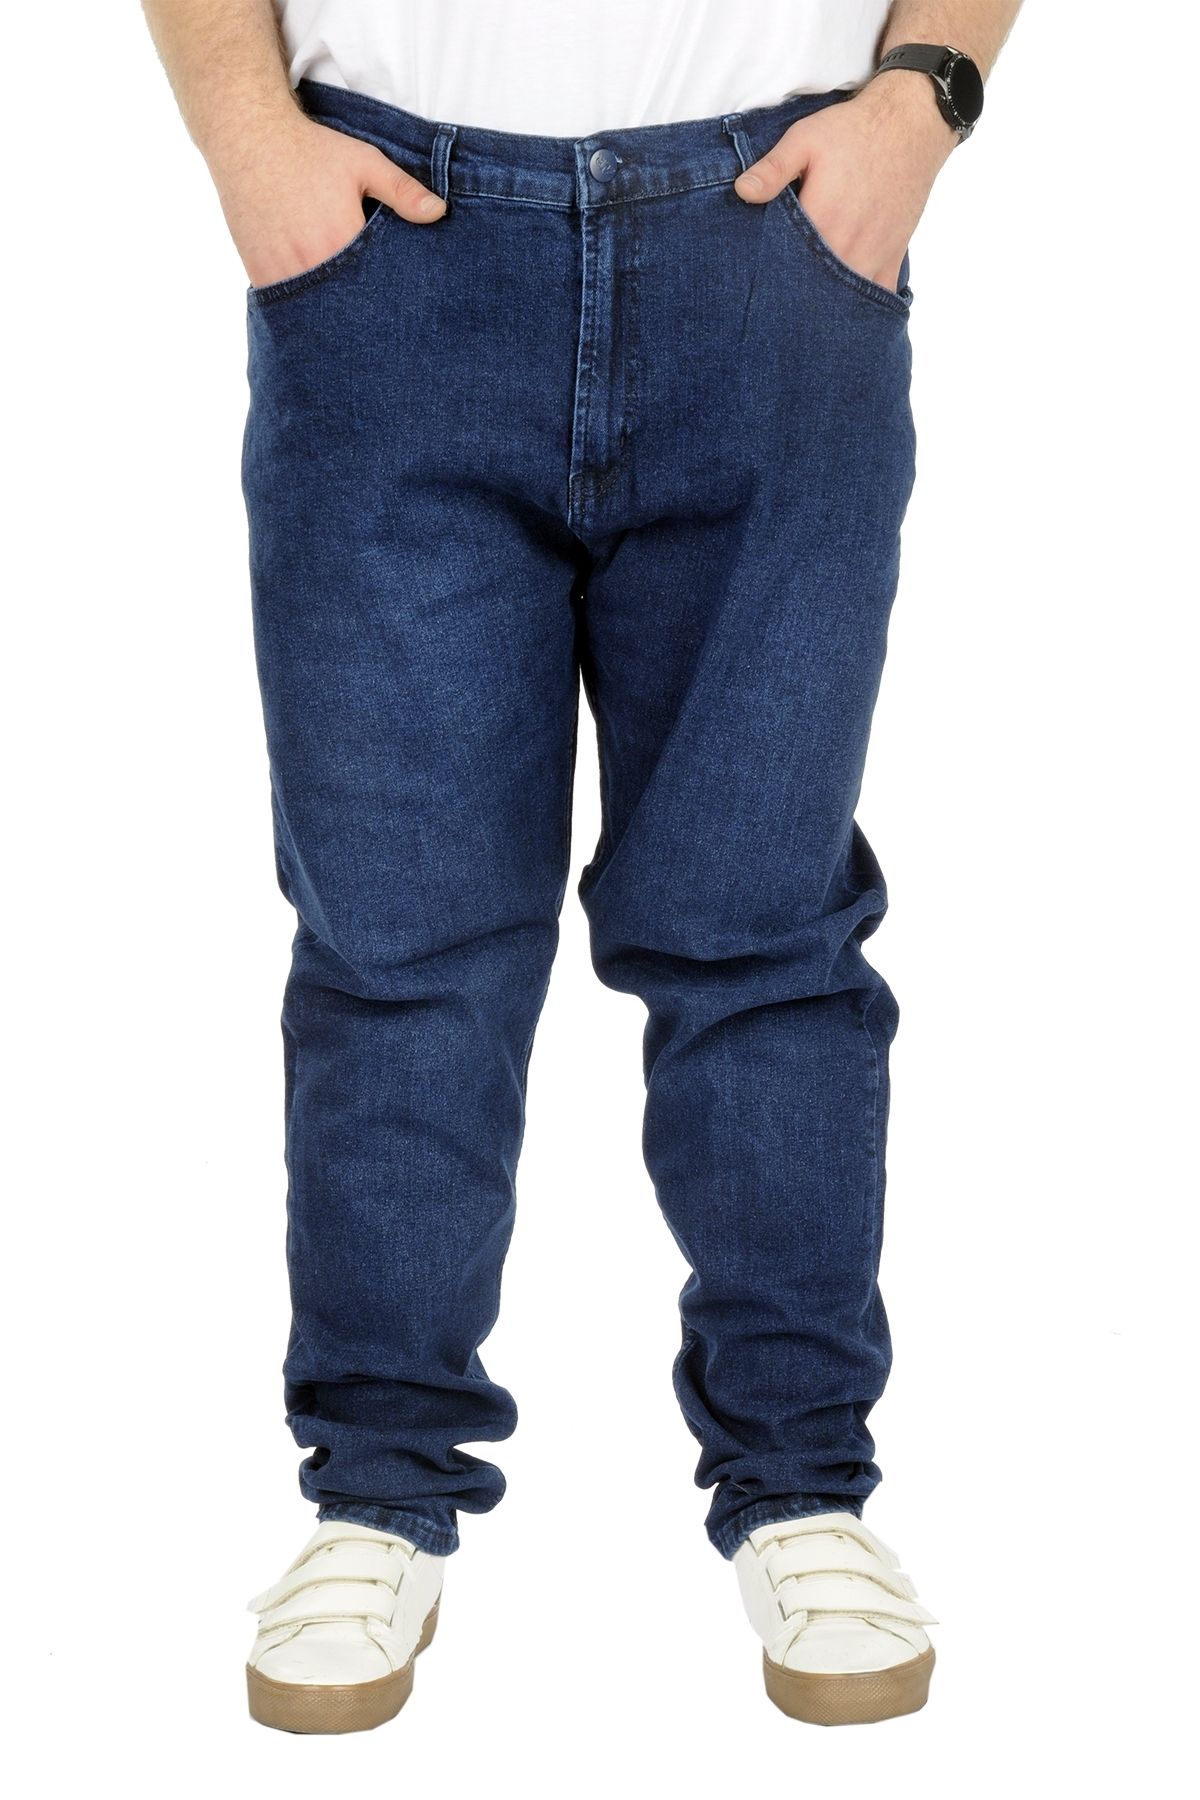 Modexl Mode Xl Büyük Beden Kot Pantolon Klasik 5 Cep Lopez Blue 22926 Mavi